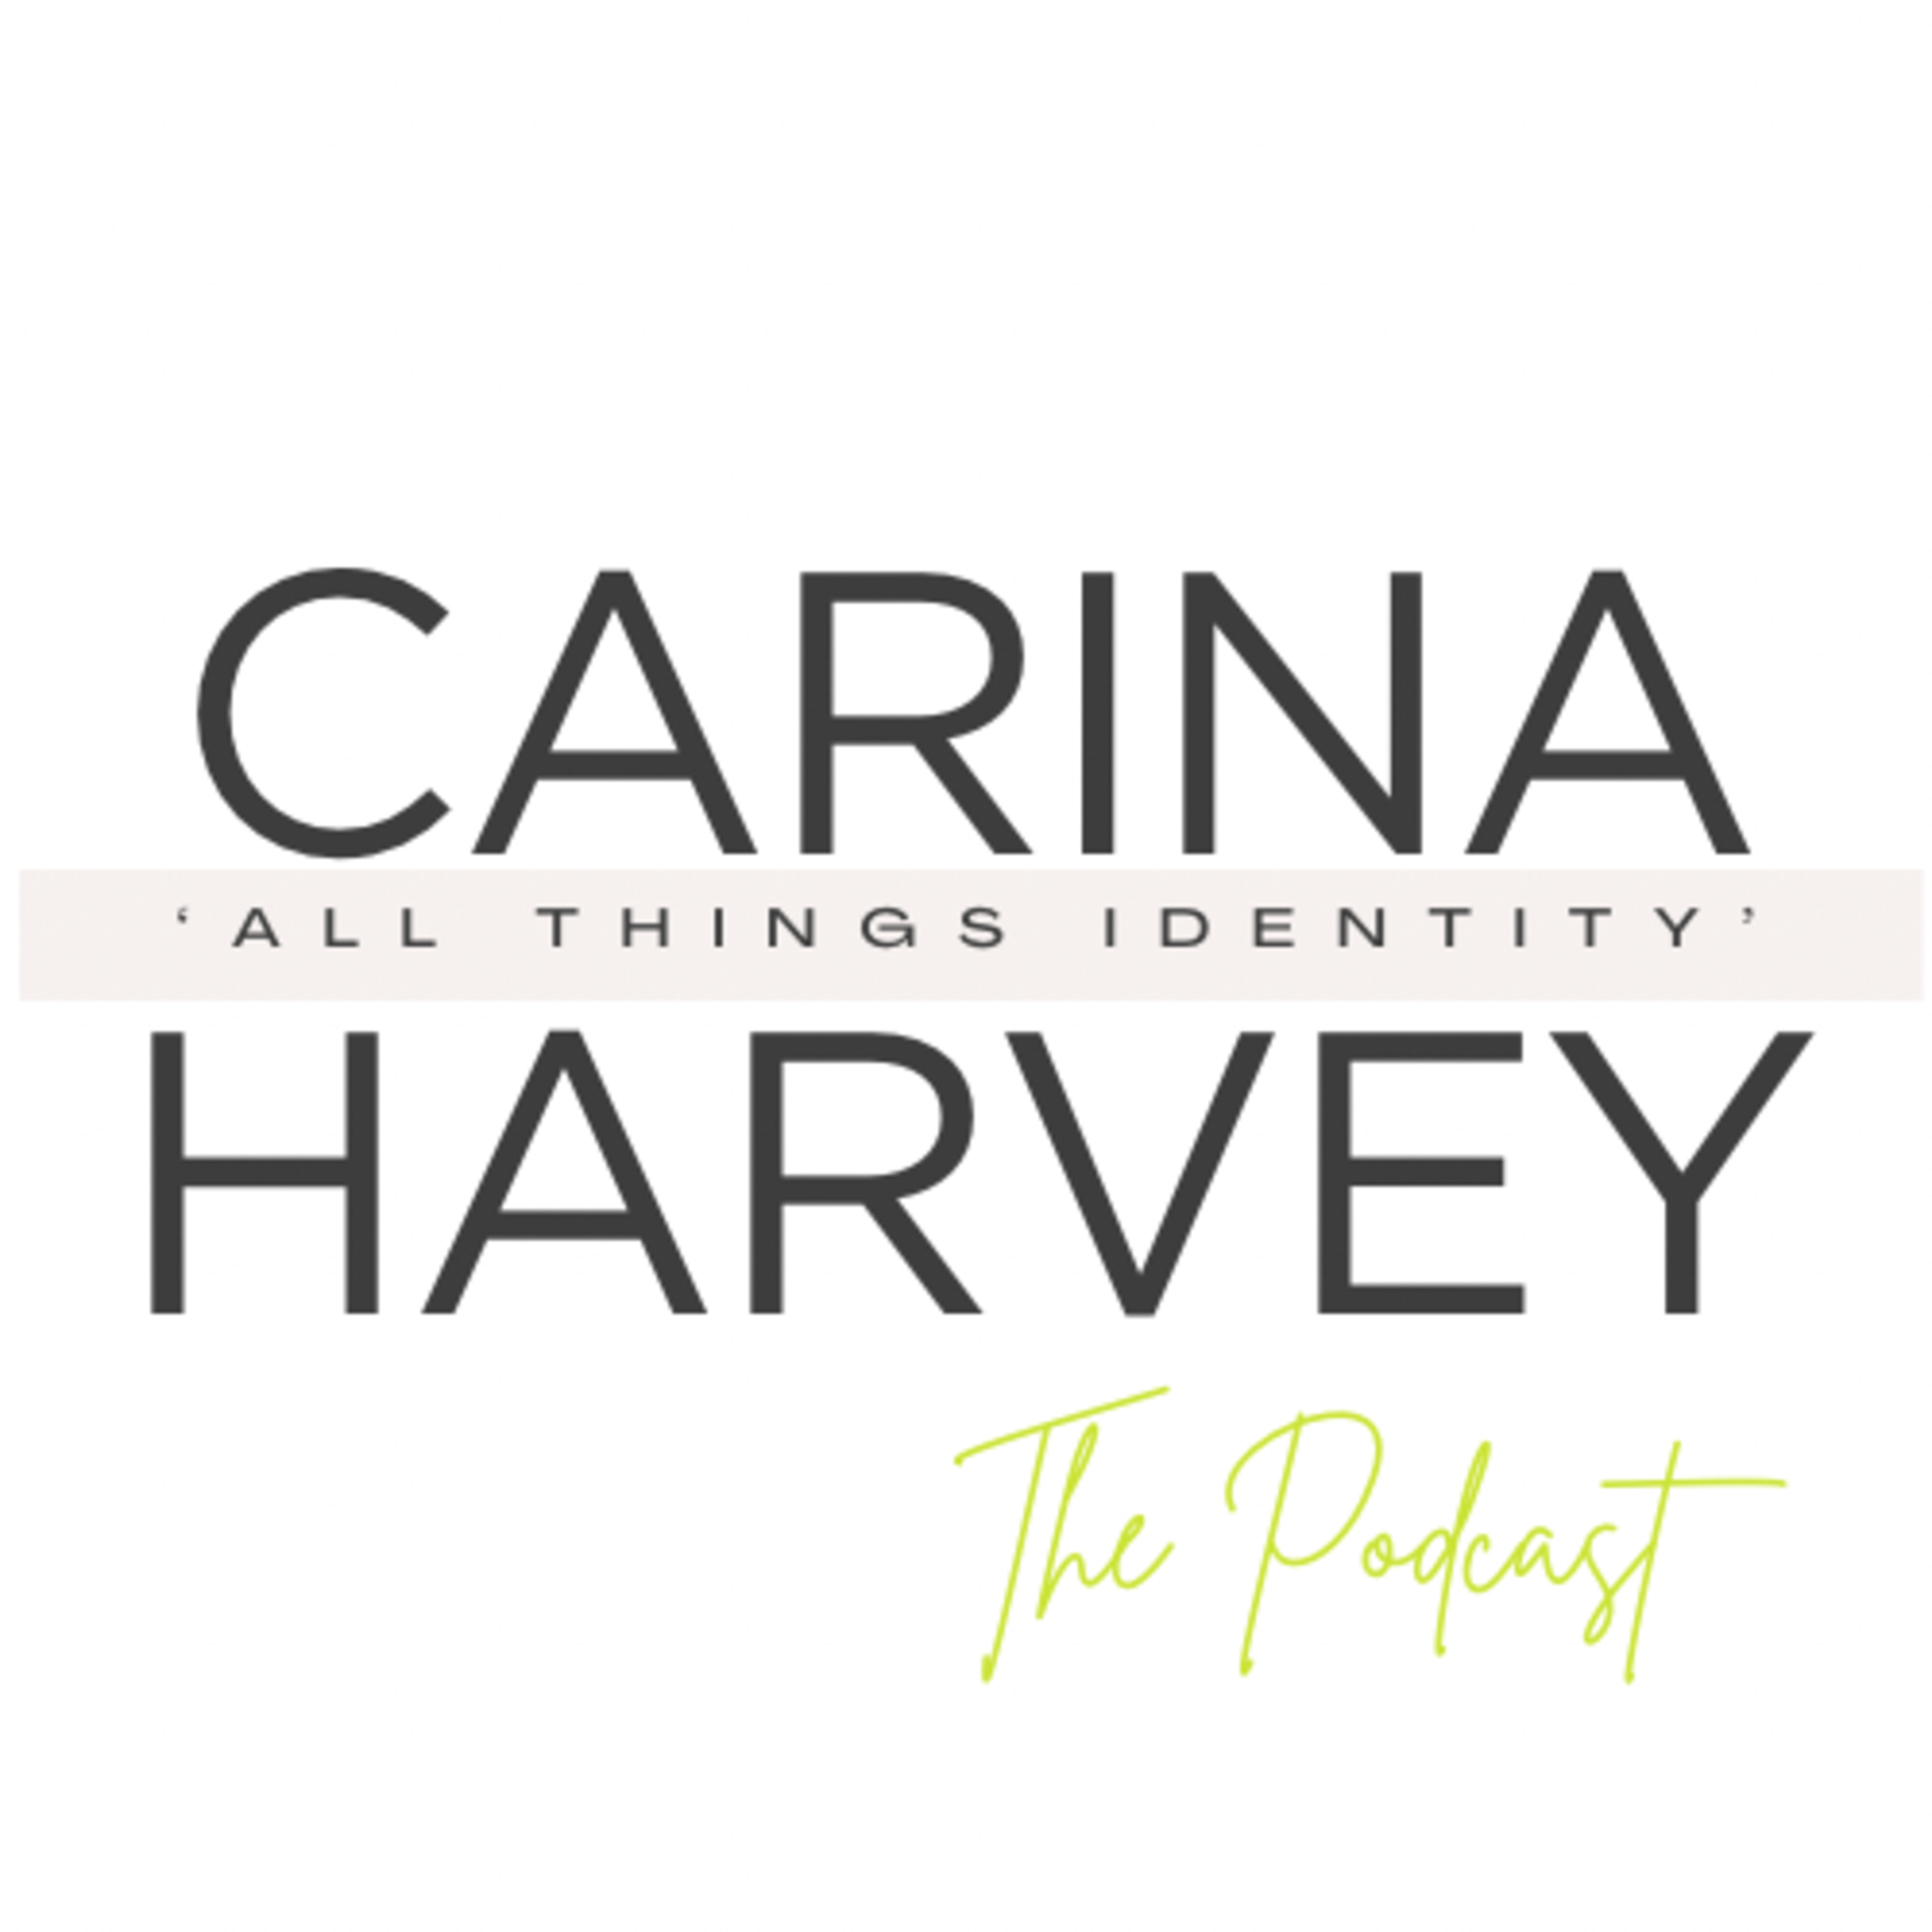 Carina Harvey: The Podcast 'All Things Identity'